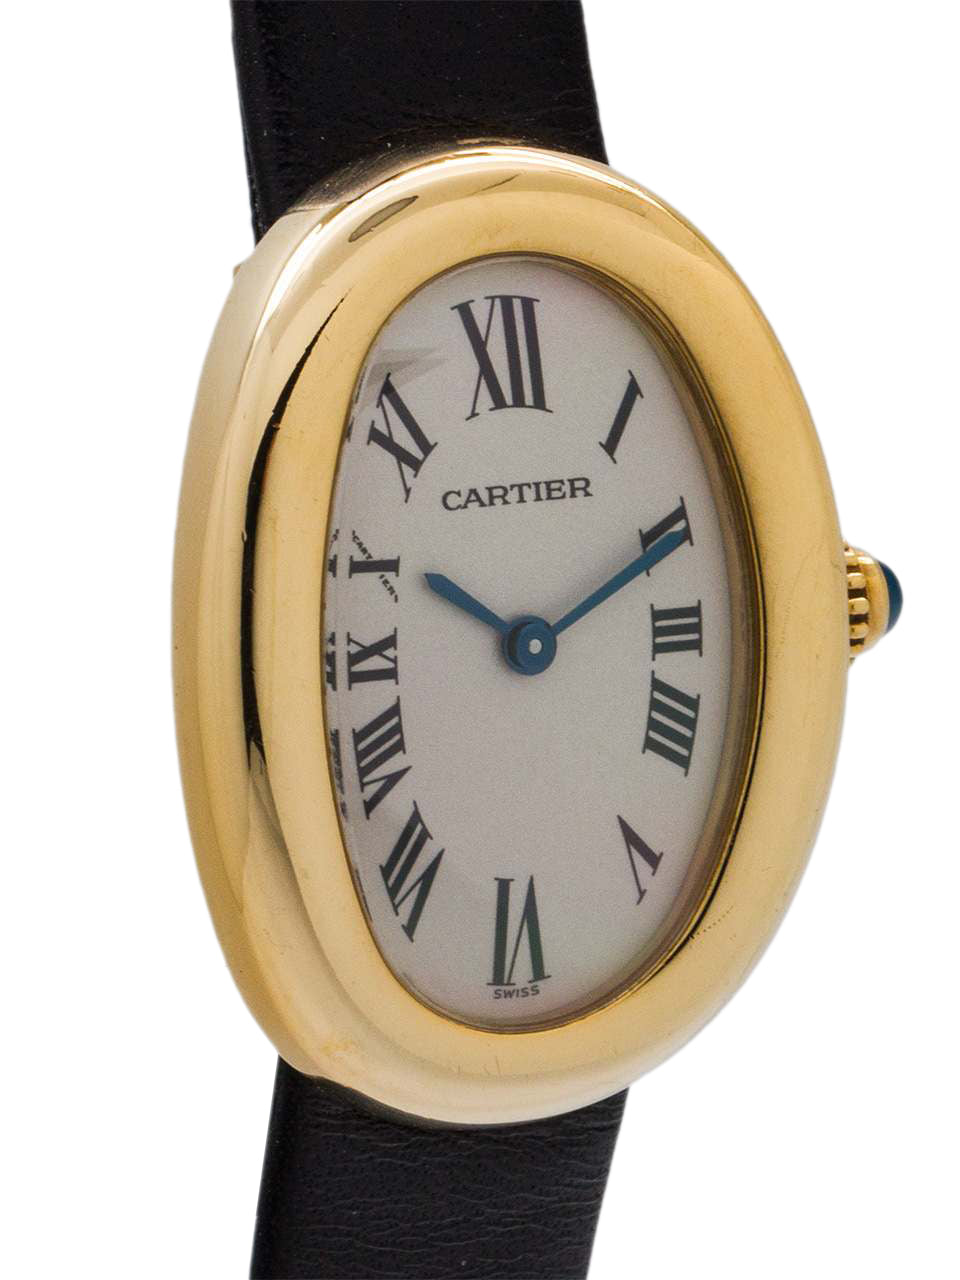 Cartier bagnoire 1954 3